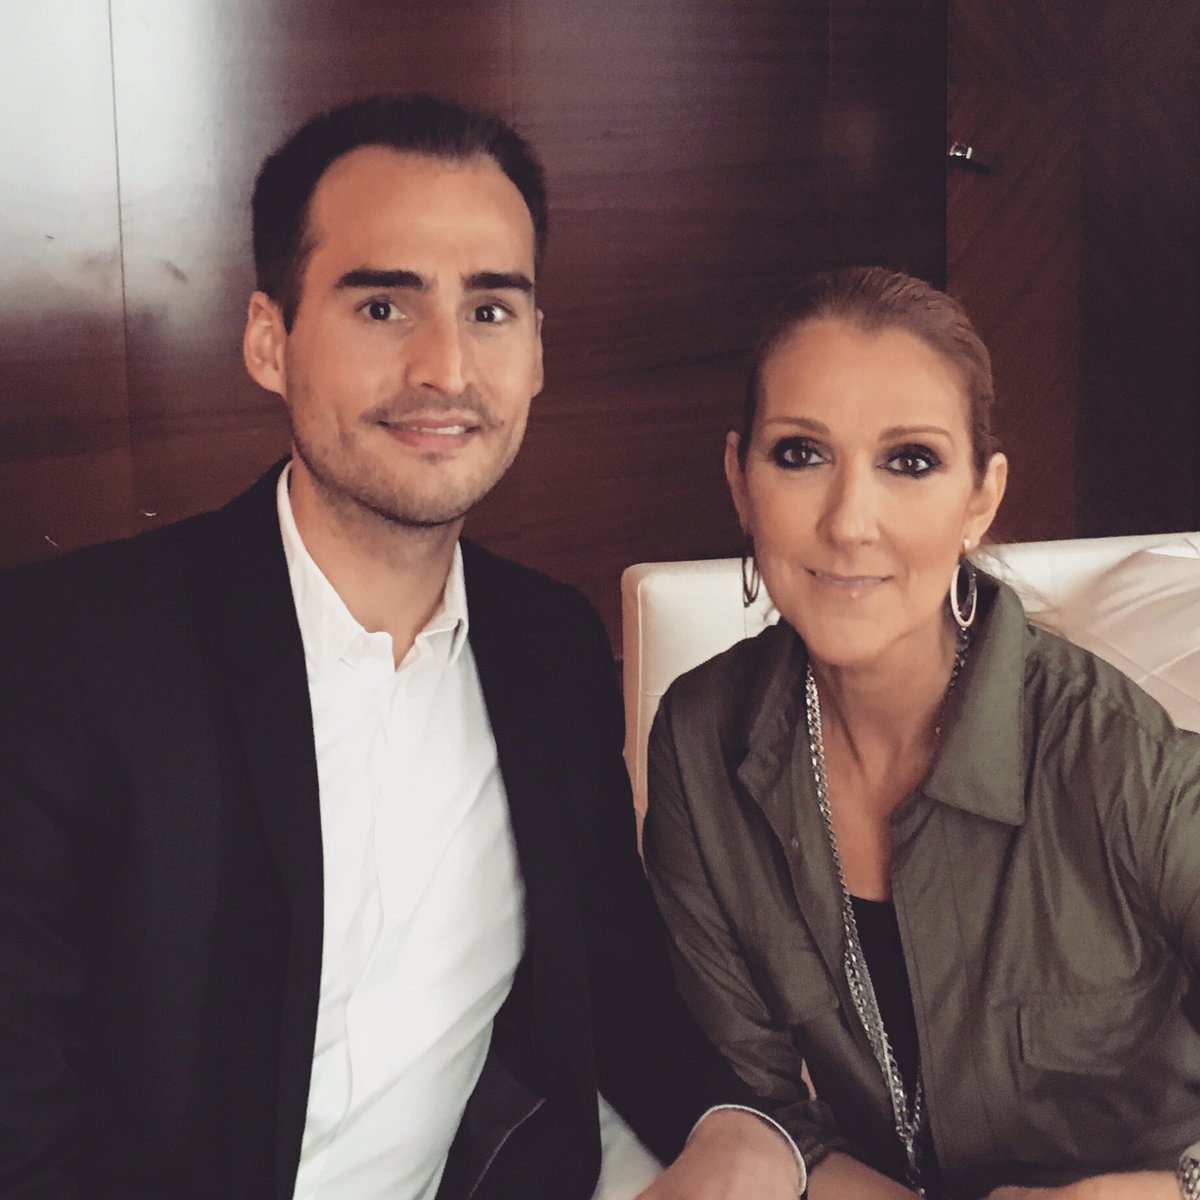 RT @StevenBellery: Rdv lundi 9h @LVT_RTL avec @CelineDion qui nous présentera son nvel album + @VianneyMusique + Charlebois @RTLFrance http…